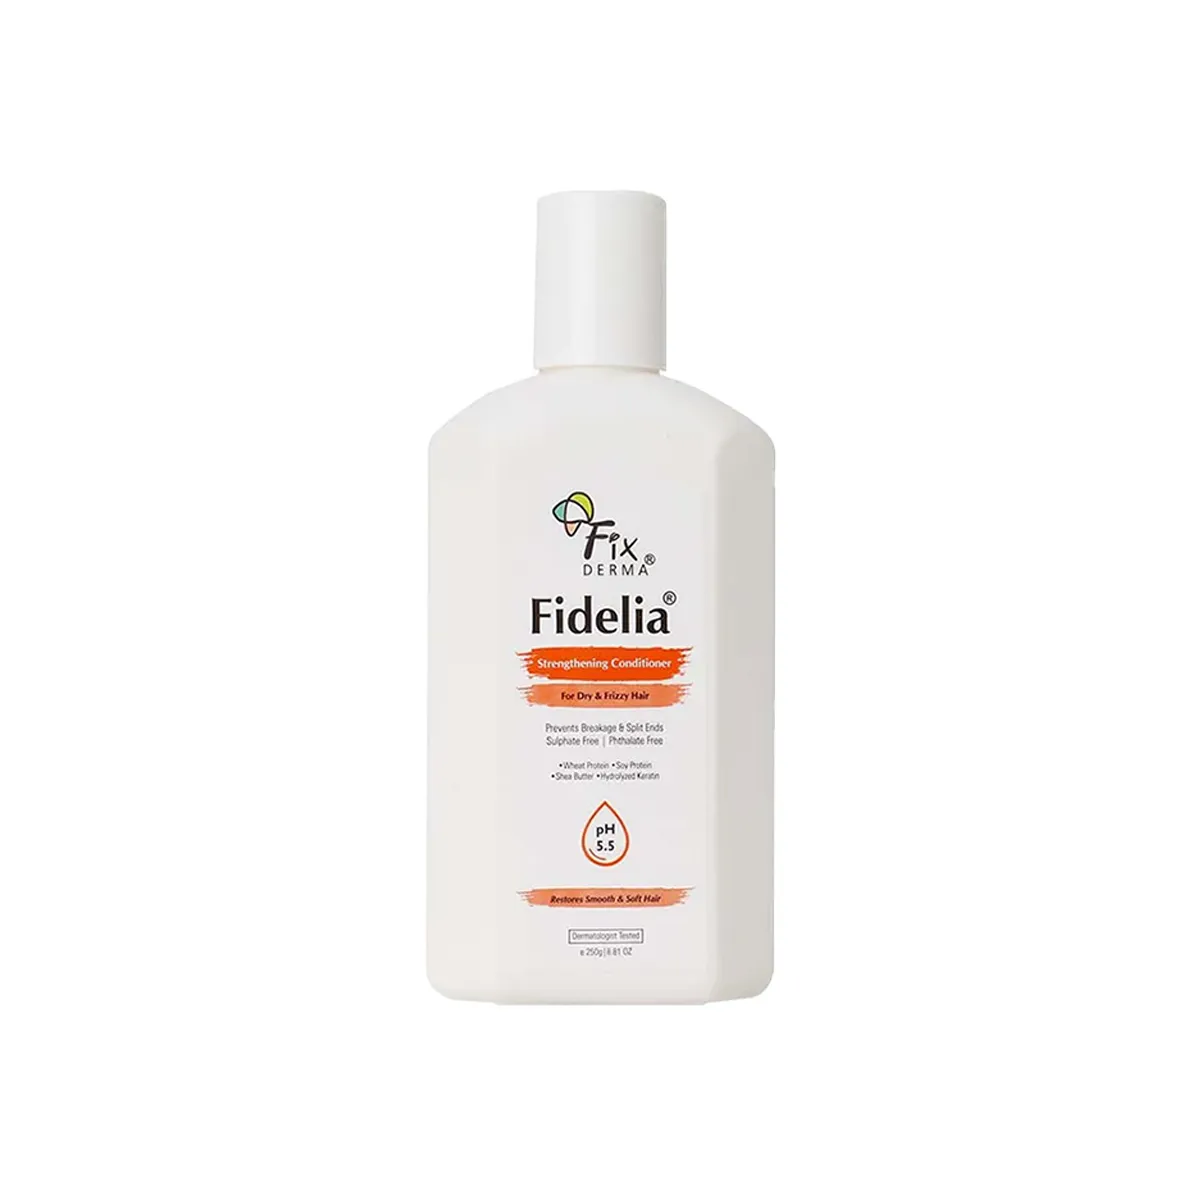 Fixderma Fidelia Strengthening Conditioner 250g